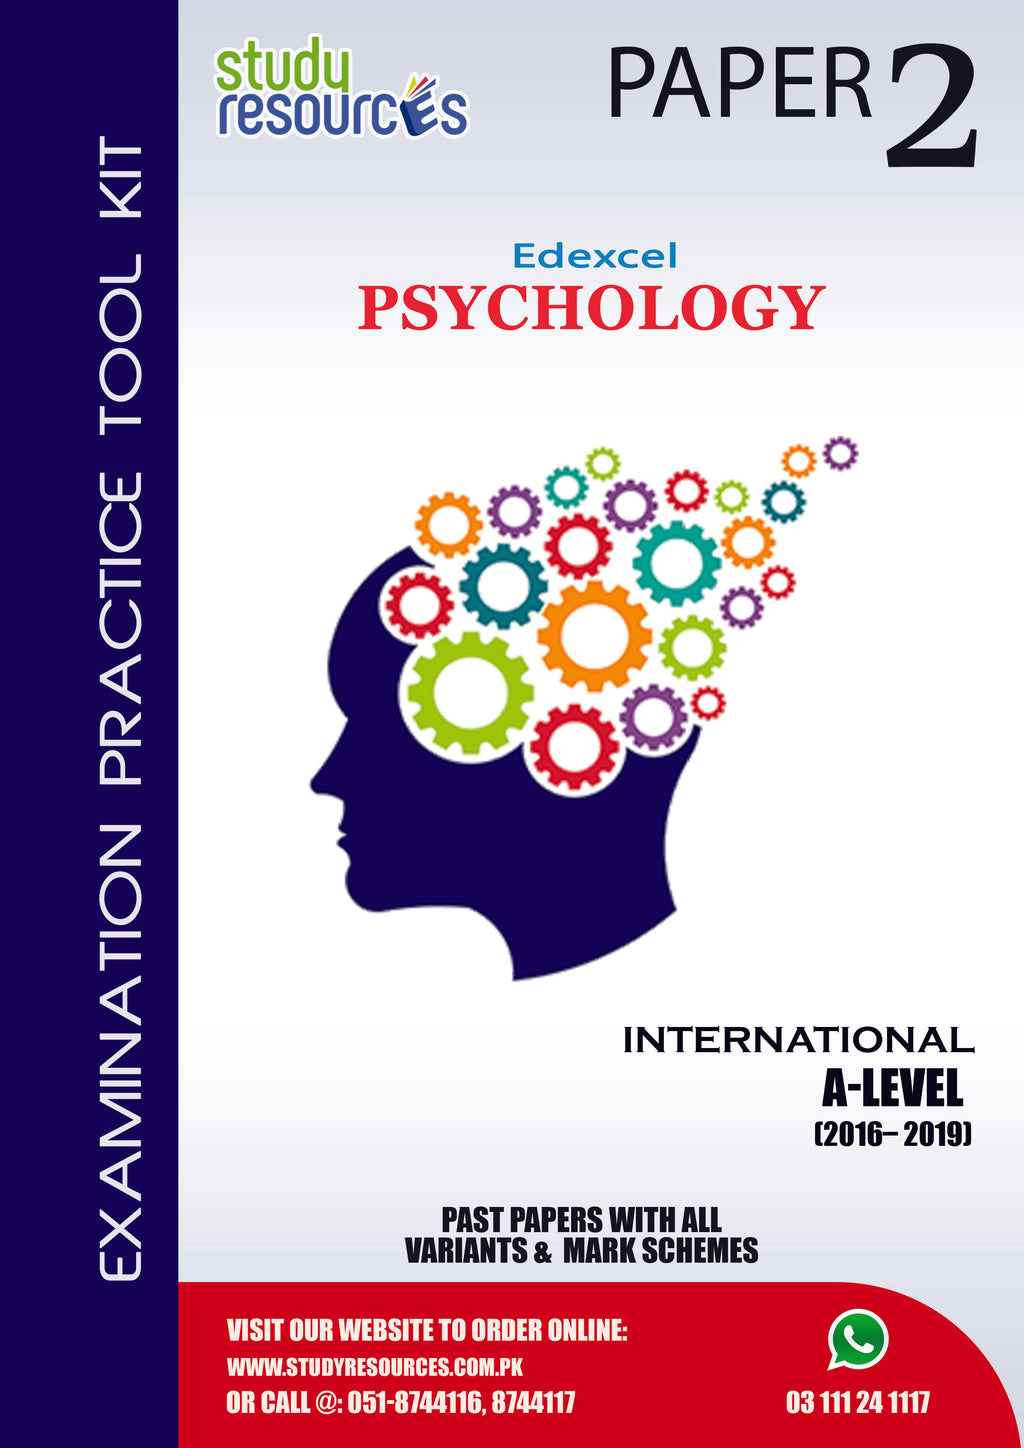 Edexcel A-Level Psychology P-2 Past Papers (2016-2019)